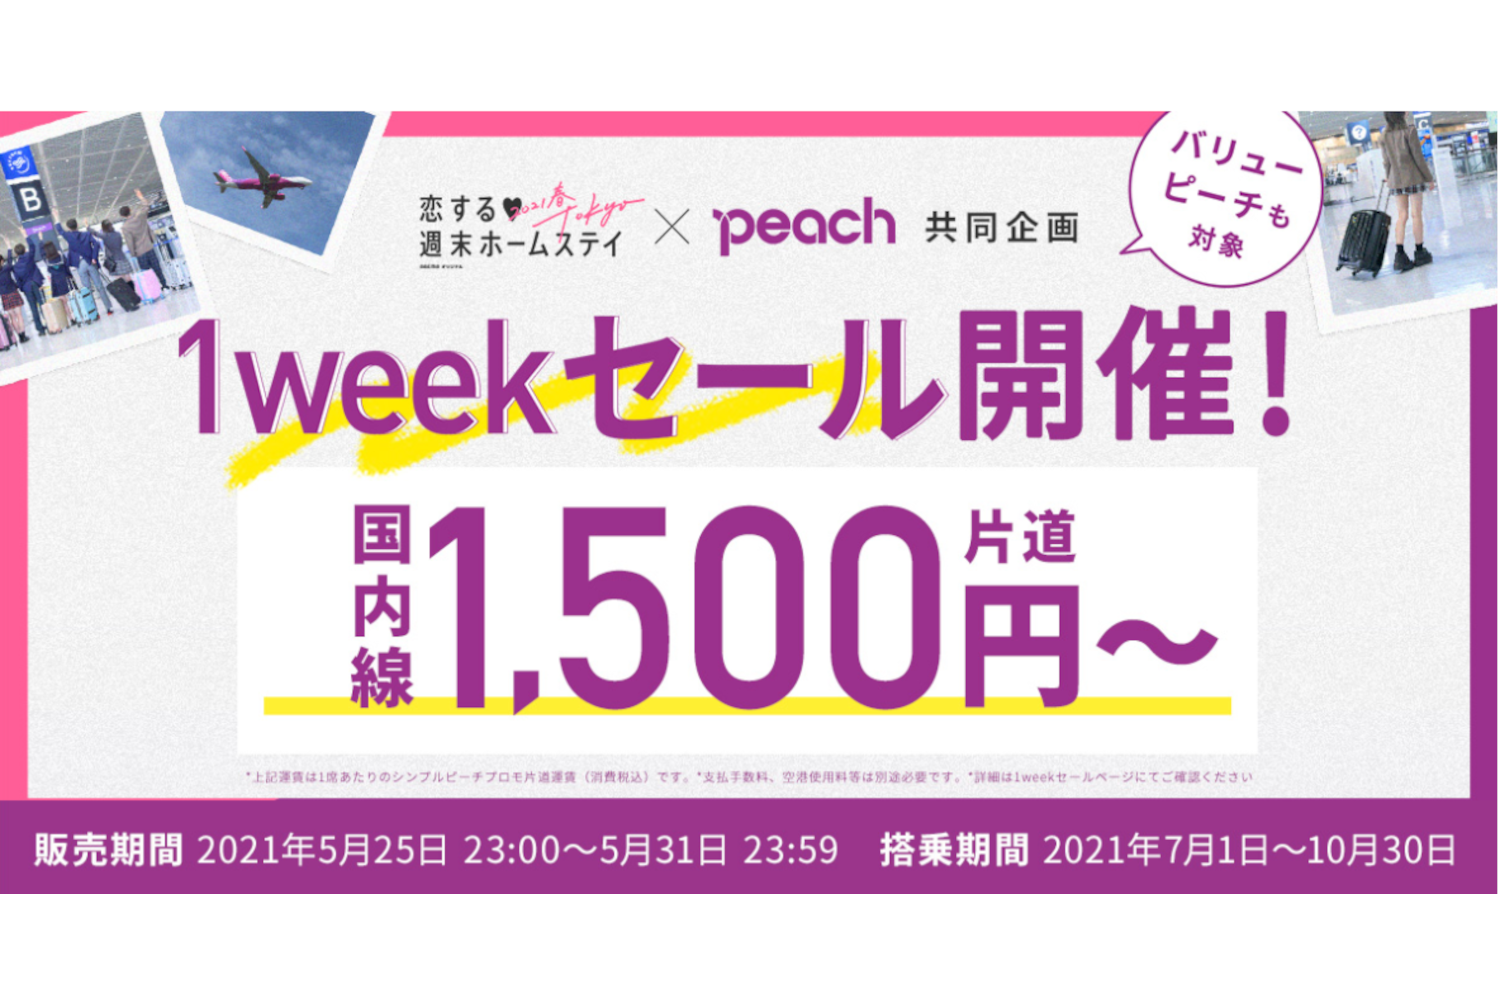 Peach 10 円